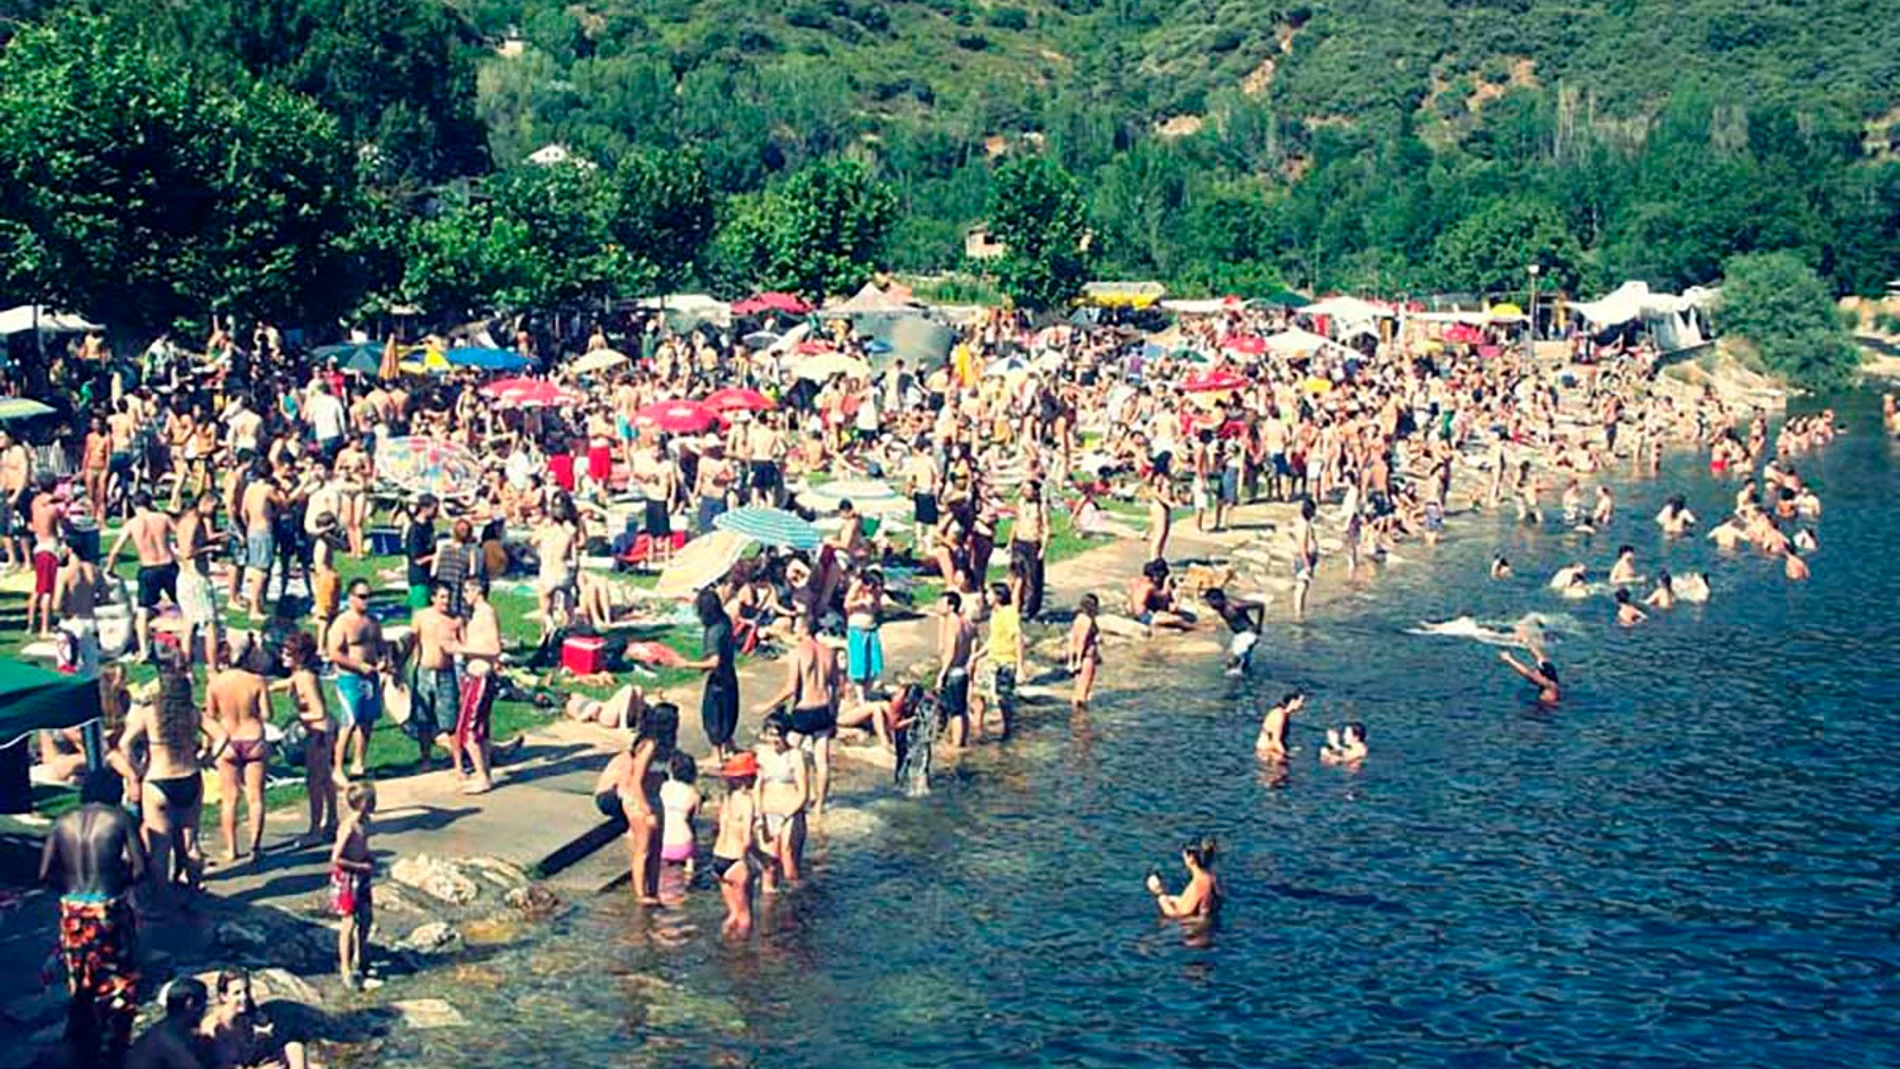 Playa fluvial de Villafranca del Bierzo escenario del festival